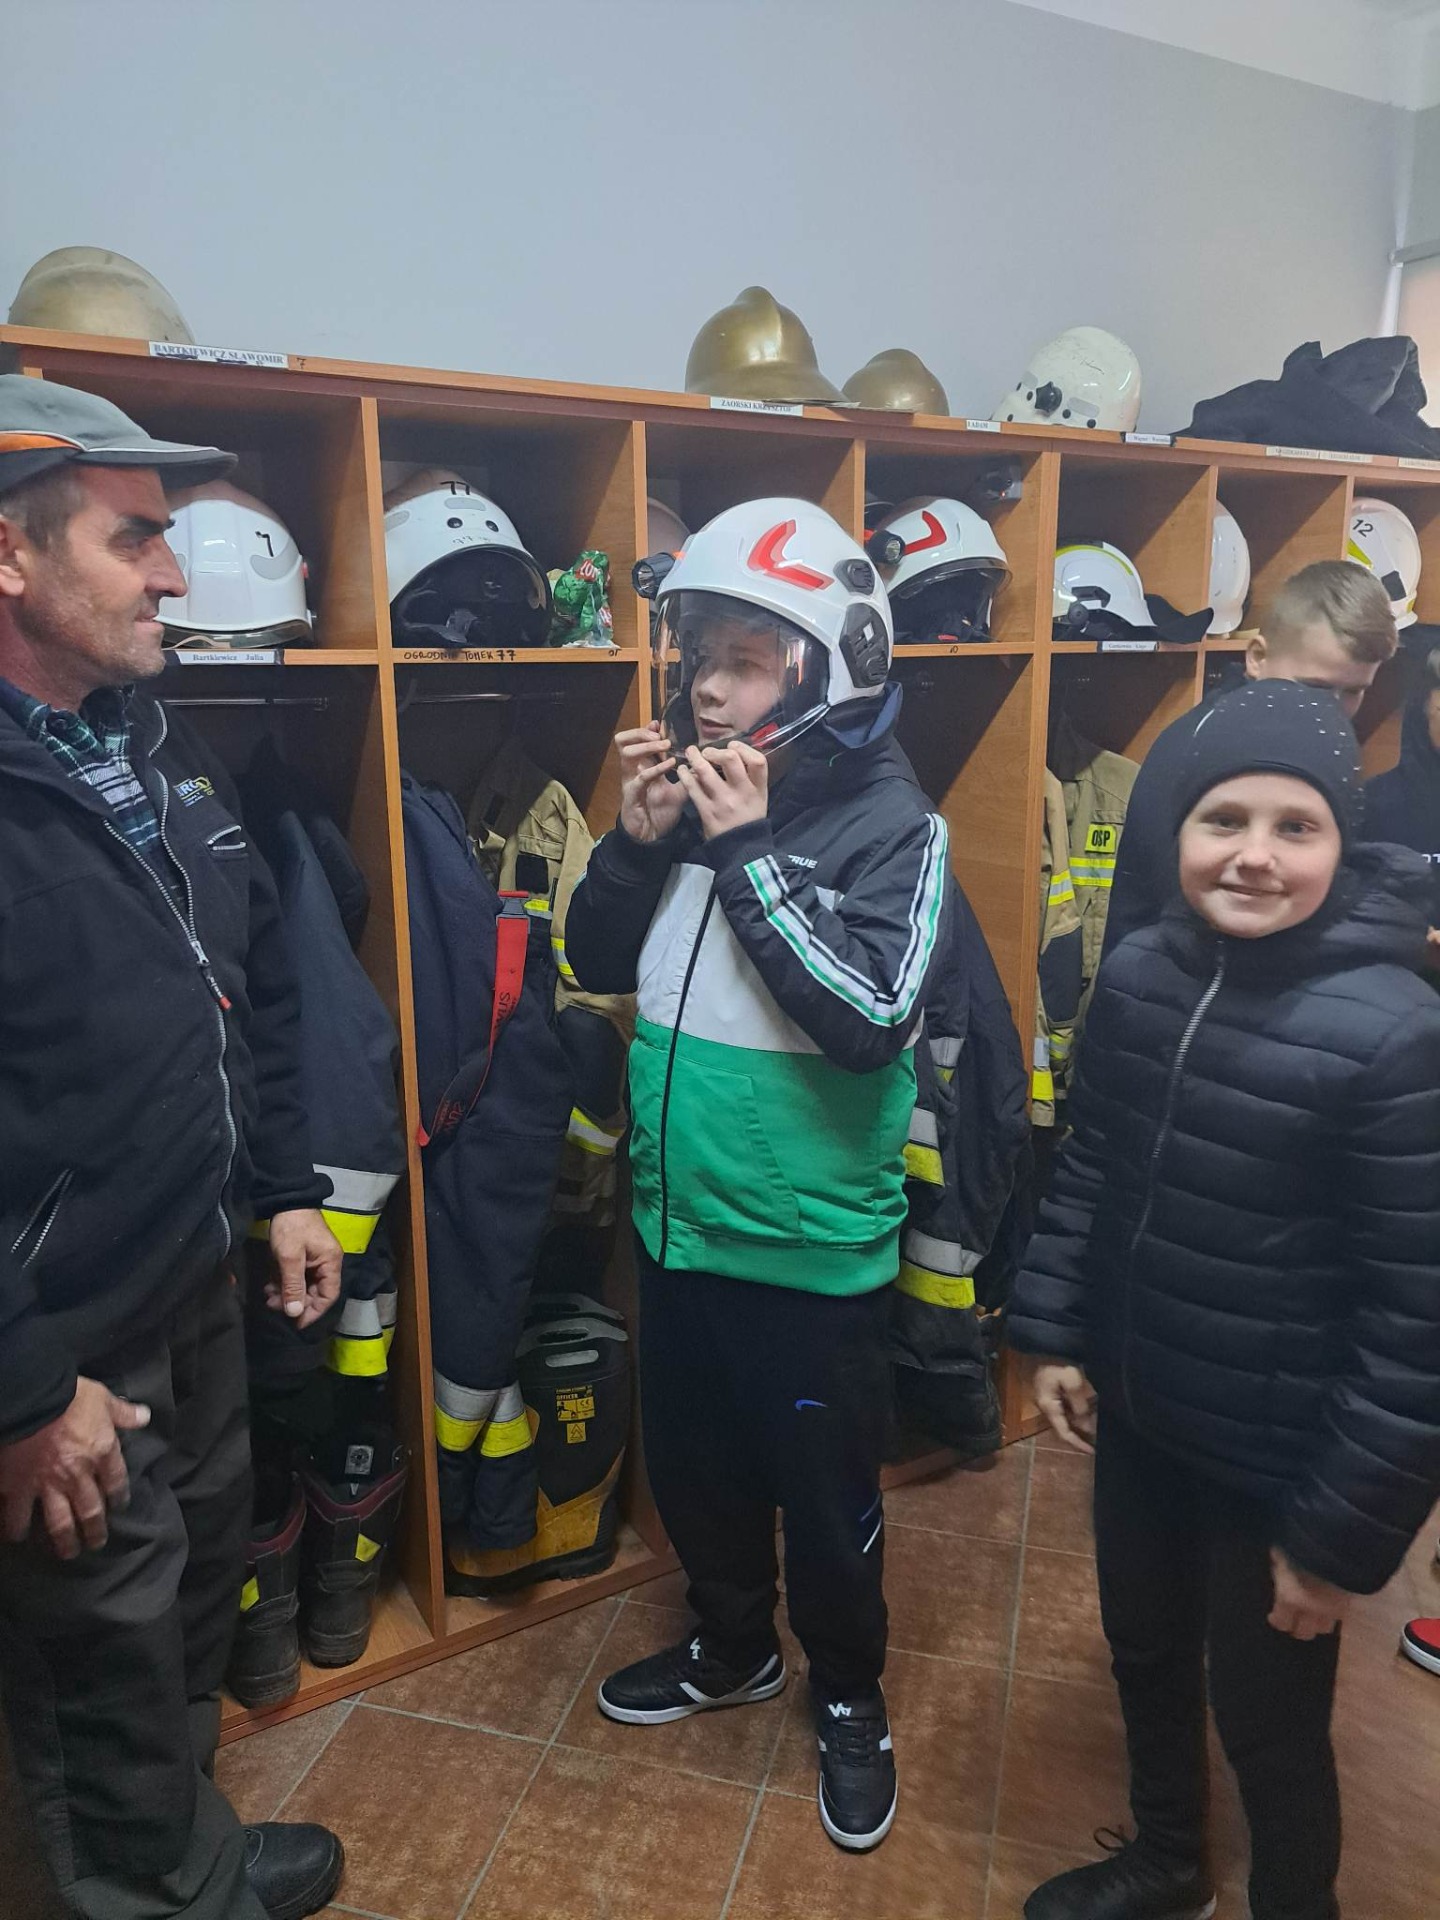 Z lewej strony stoi strażak, z prawej strony stoi uśmiechnięta dziewczynka, w środku chłopiec w strażackim hełmie.